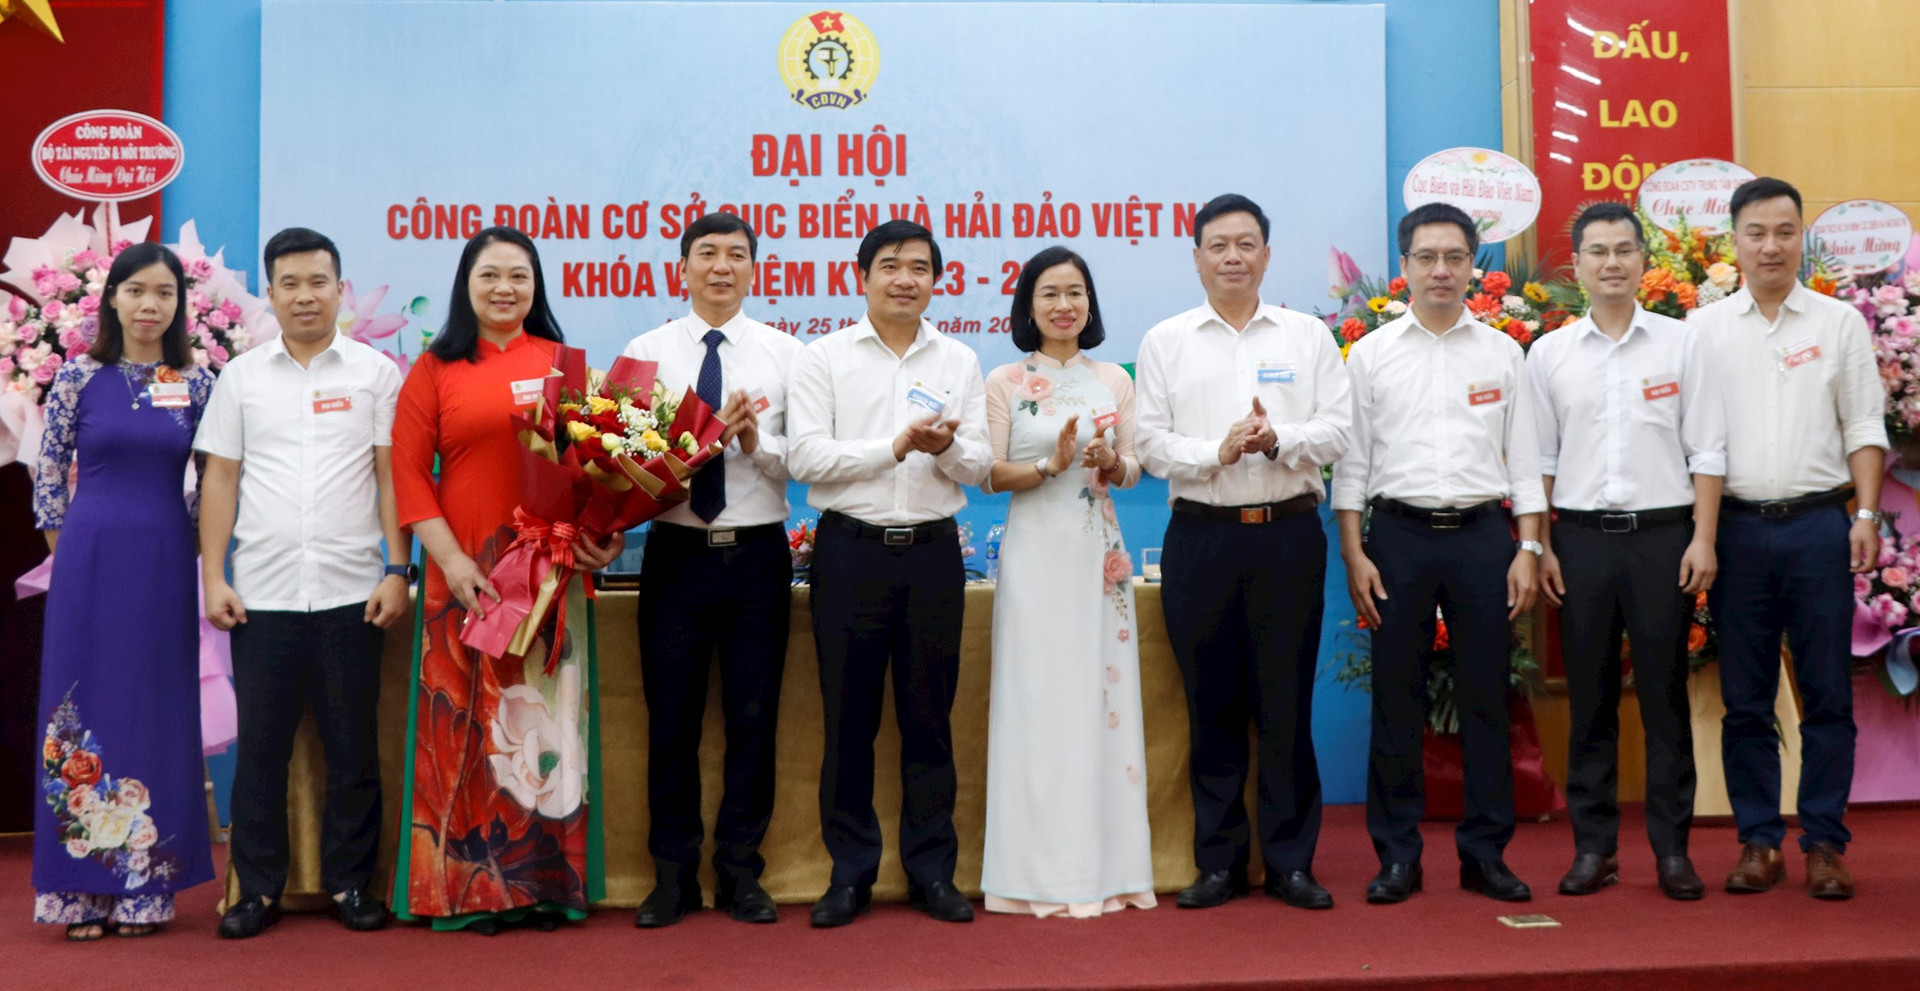 Công đoàn Cục Biển và Hải đảo Việt Nam: “Đoàn kết, sáng tạo và phát triển”